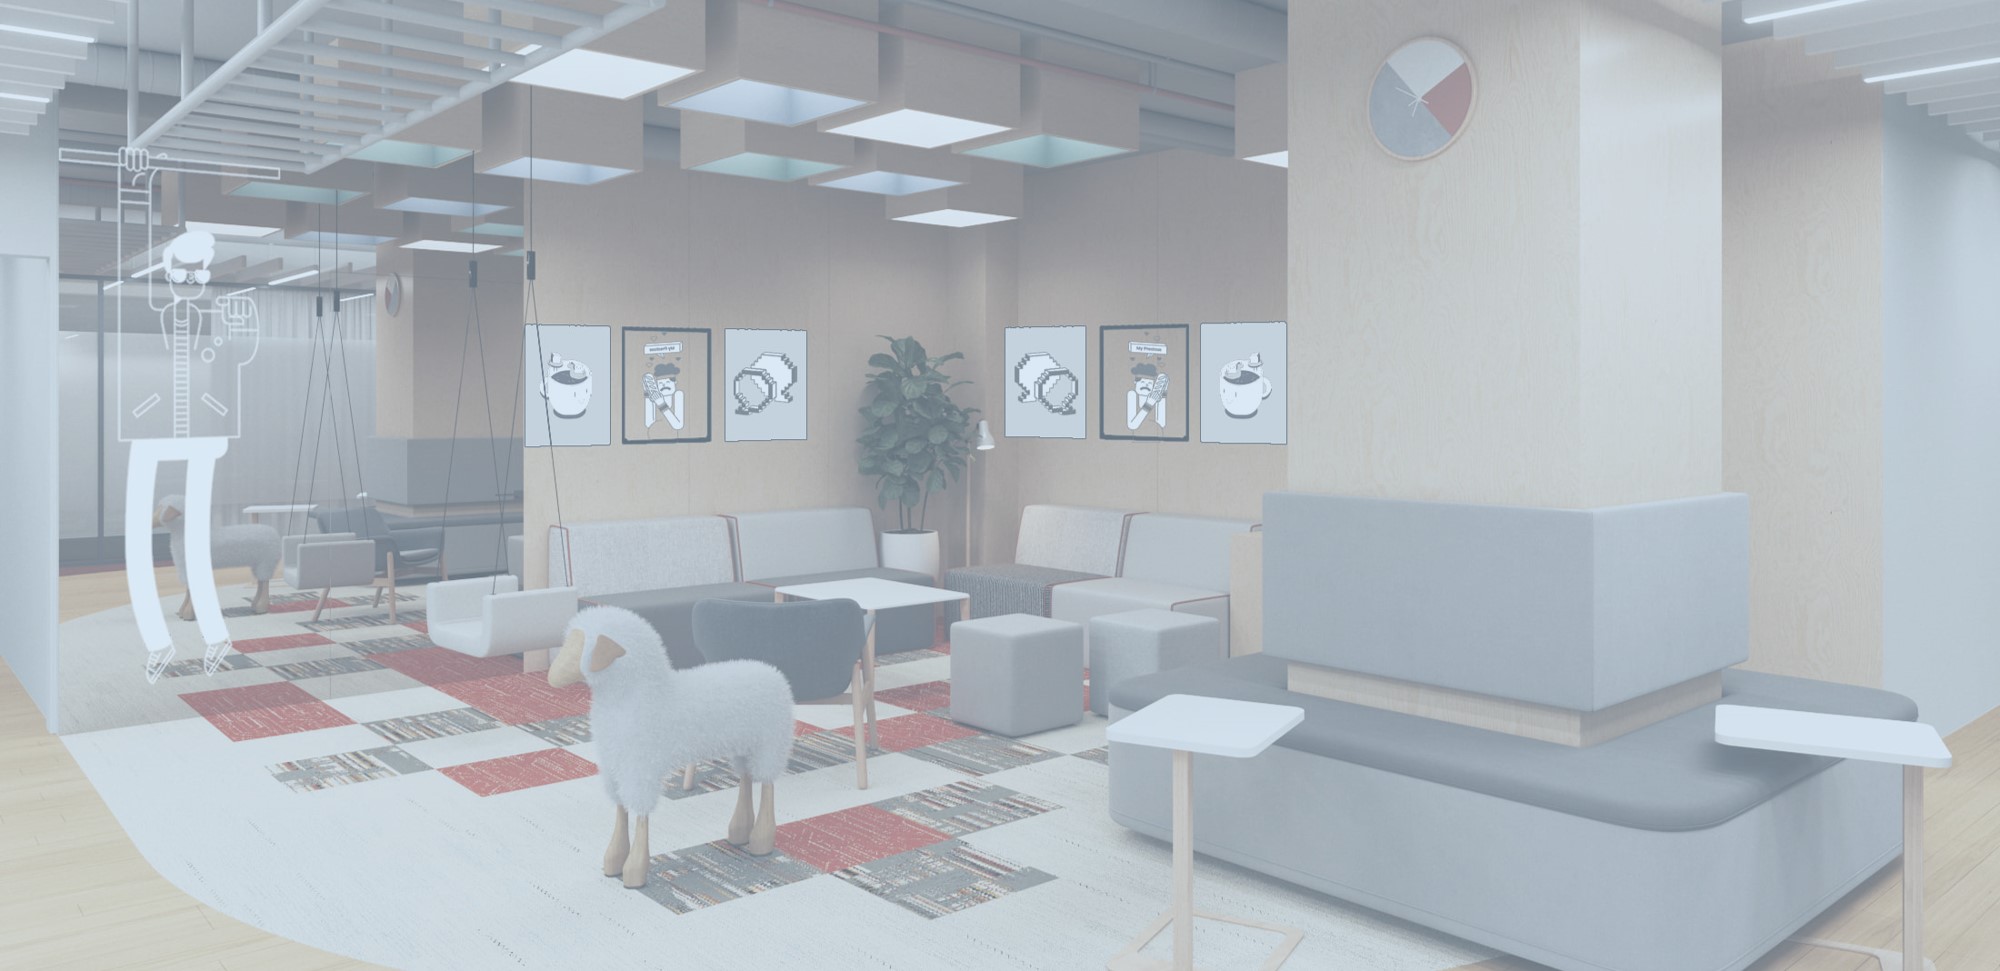 Дизайн офисов 2022: где хотят работать перспективные специалисты и как оборудовать для них комфортное пространство 